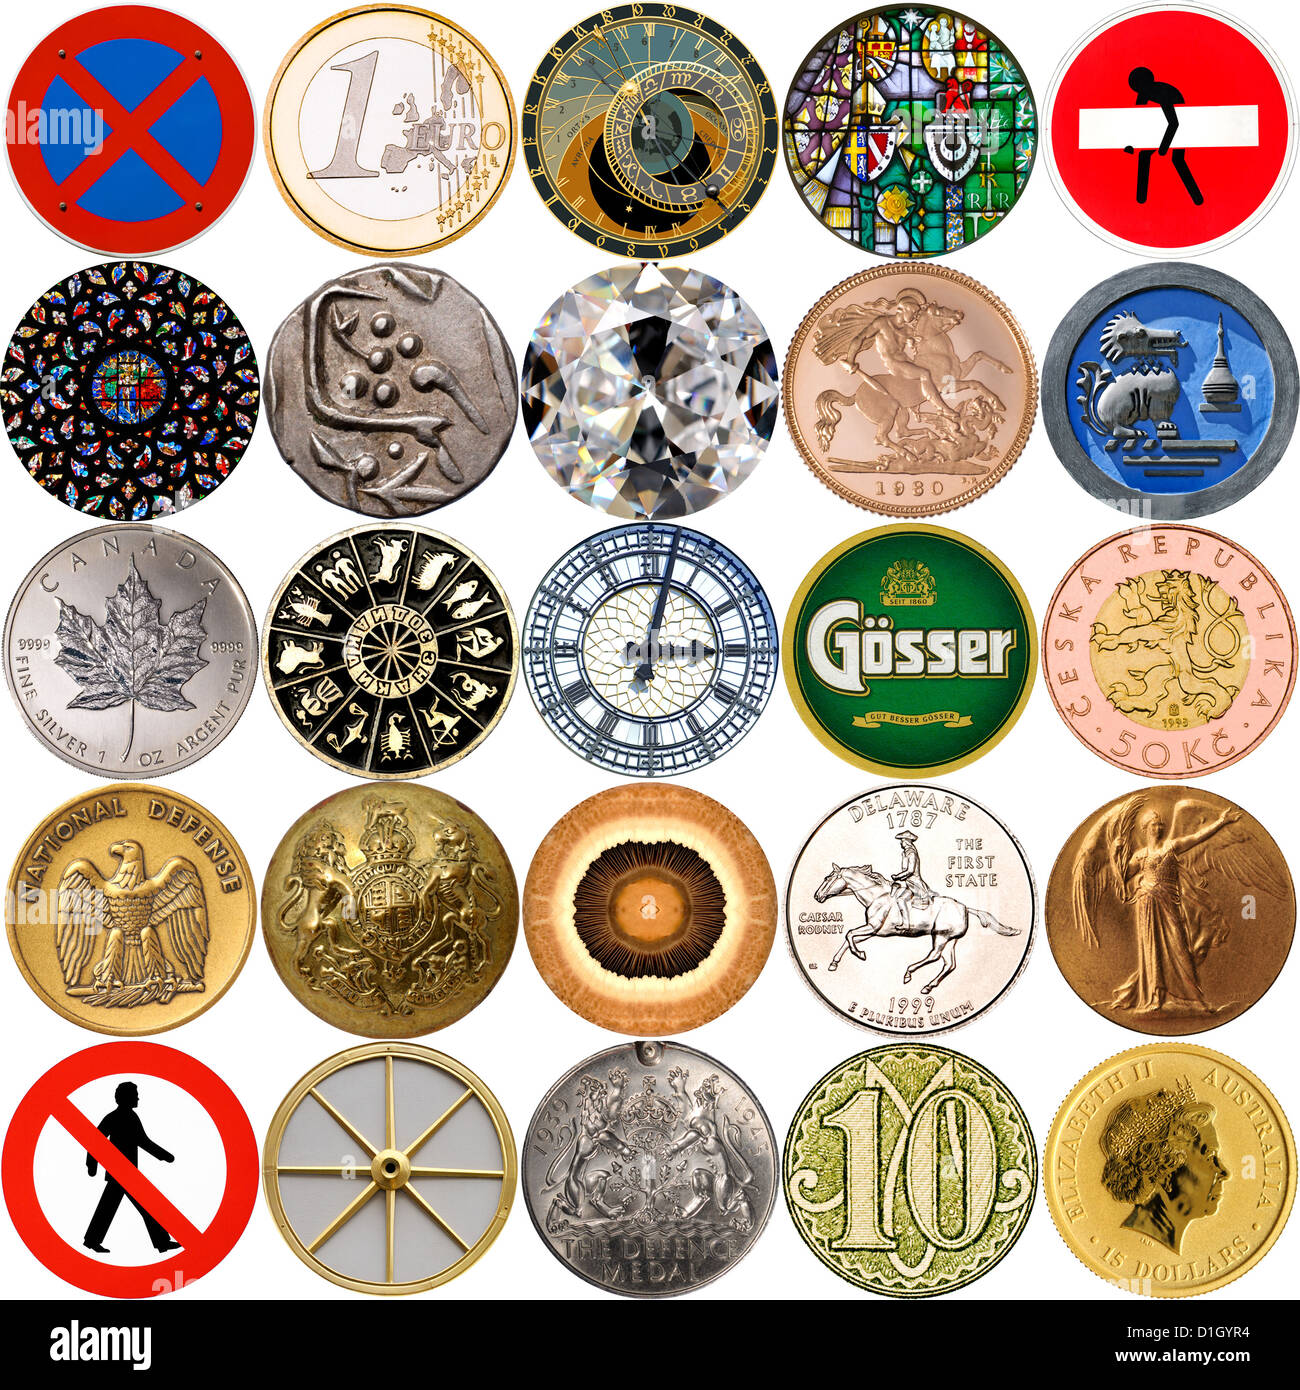 Oggetti circolari - monete, medaglie, cartelli stradali ecc. Foto Stock